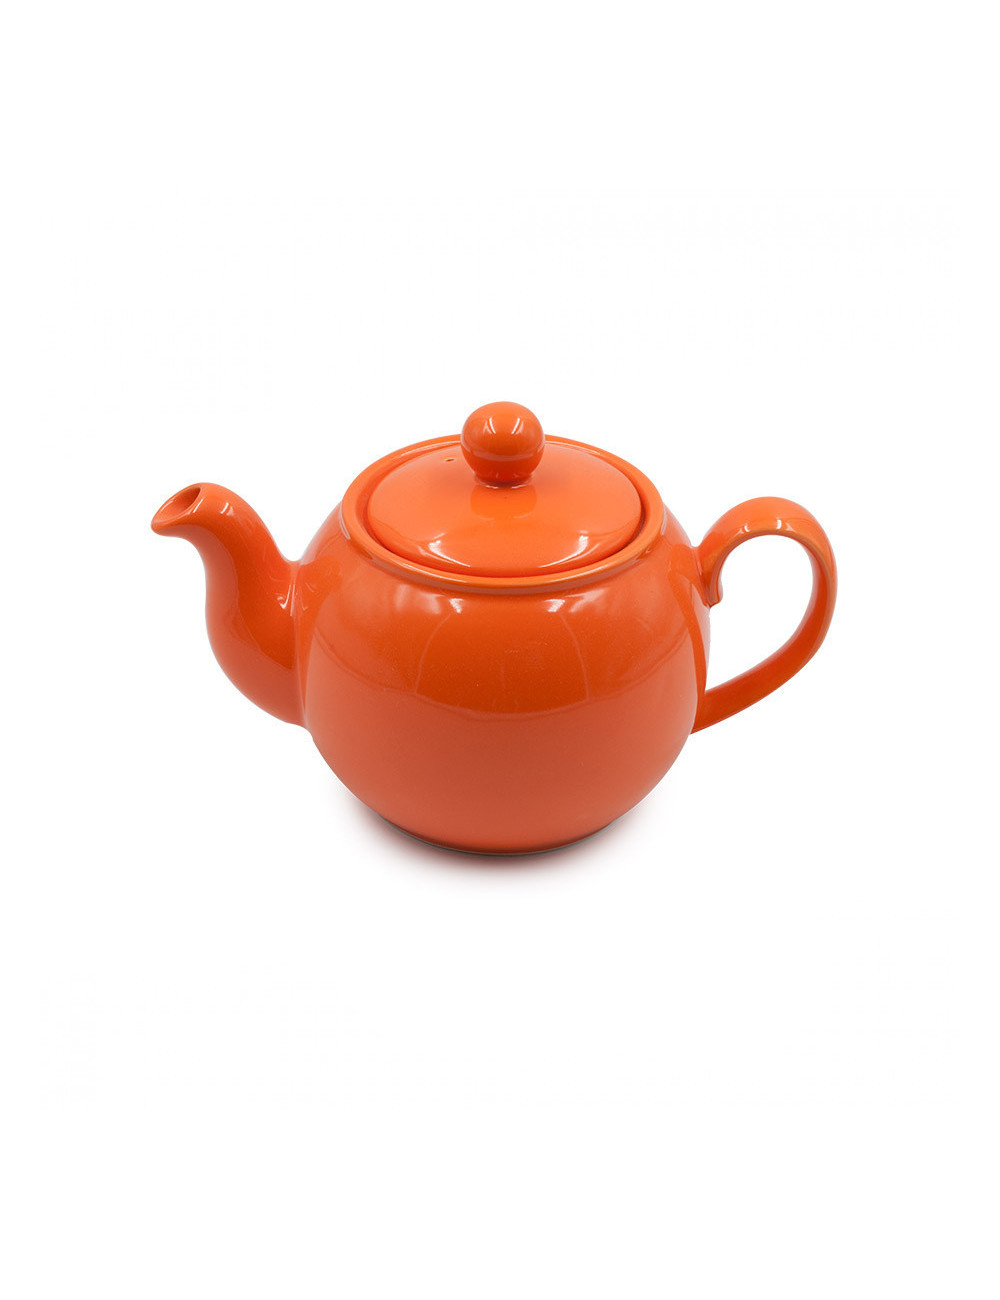 Teiera in porcellana Louise arancio classica - La Pianta del Tè vendita online